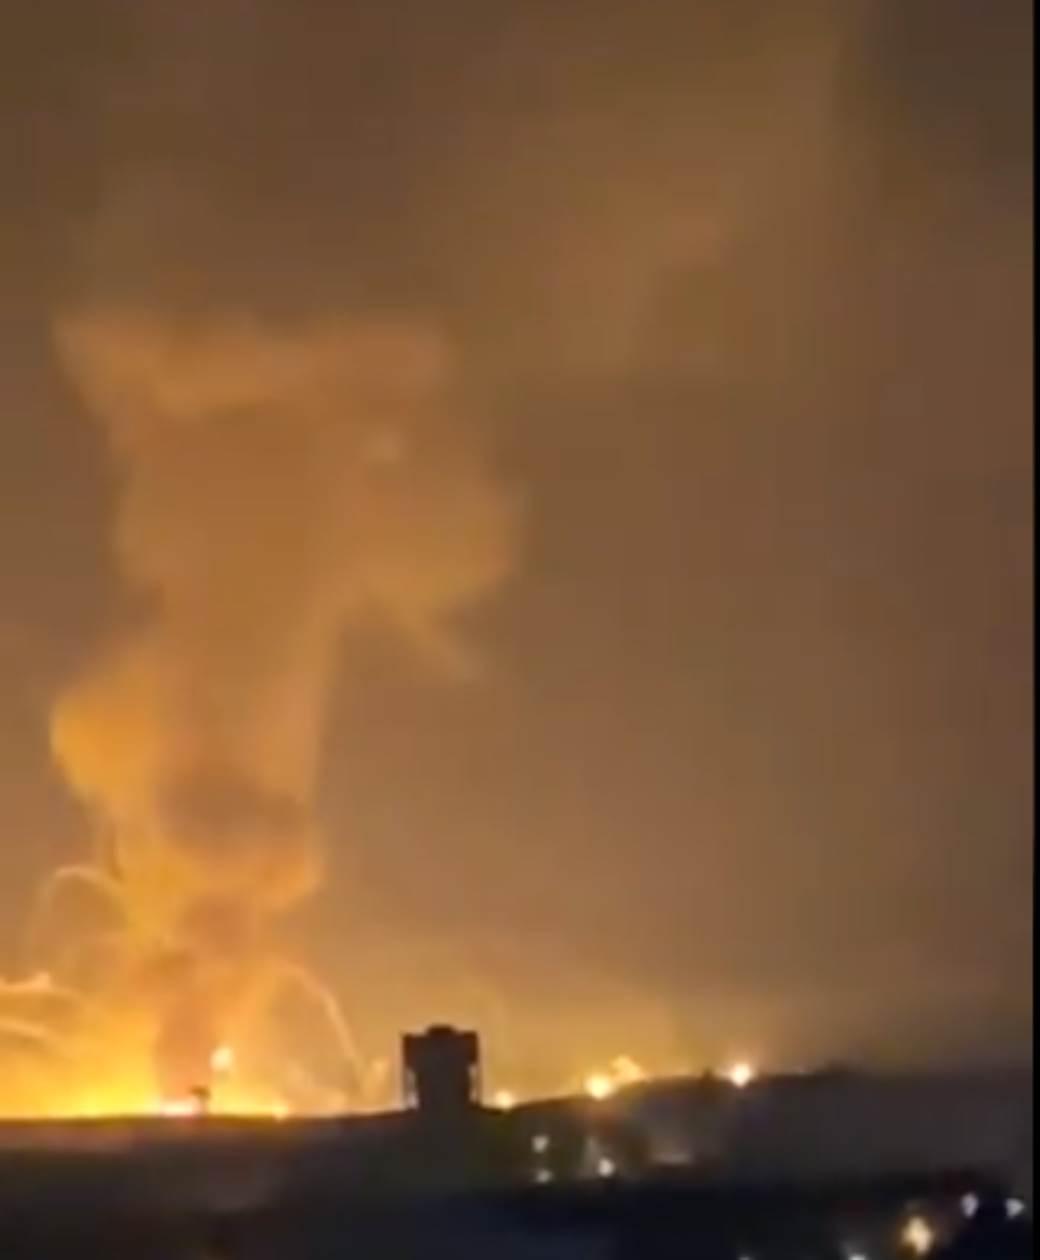  Jordan - Eksplozija - skladište municije - Američka vojna baza - požar VIDEO  